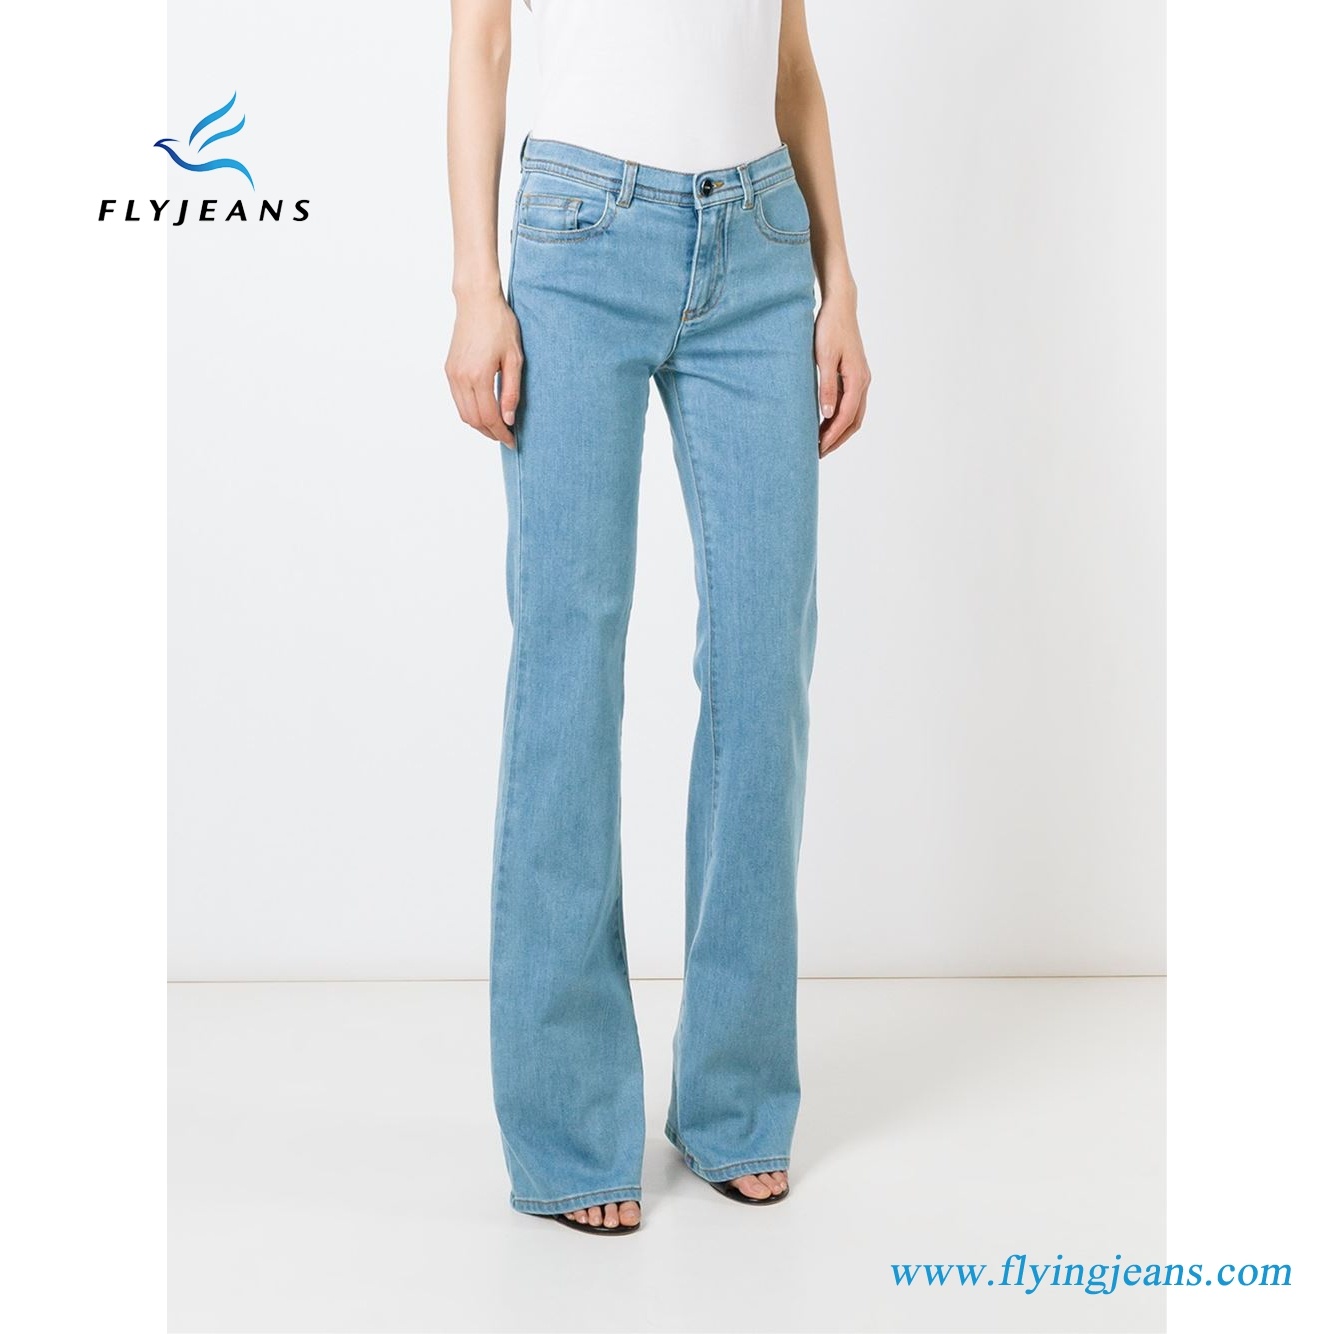 Fashion Women Denim Blue Stretch Cotton Bootcut Jeans